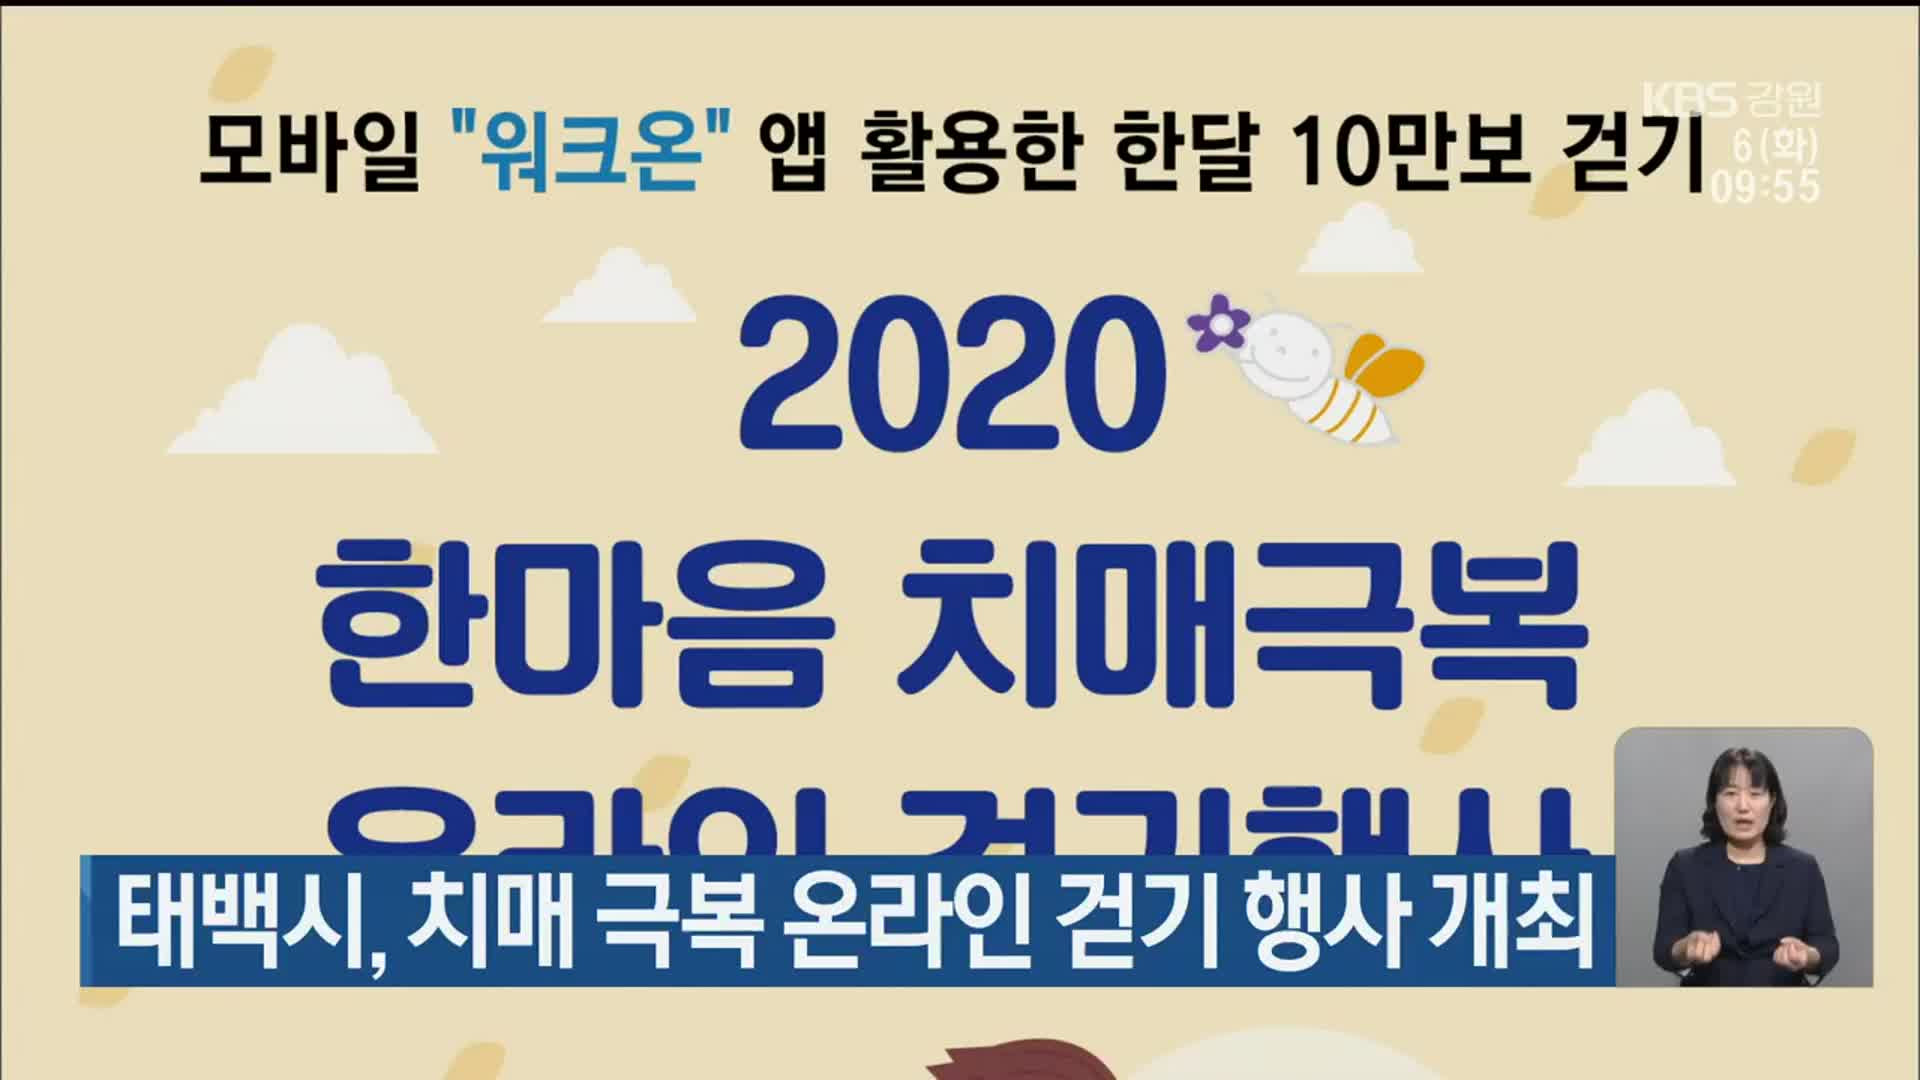 태백시, 치매 극복 온라인 걷기 행사 개최